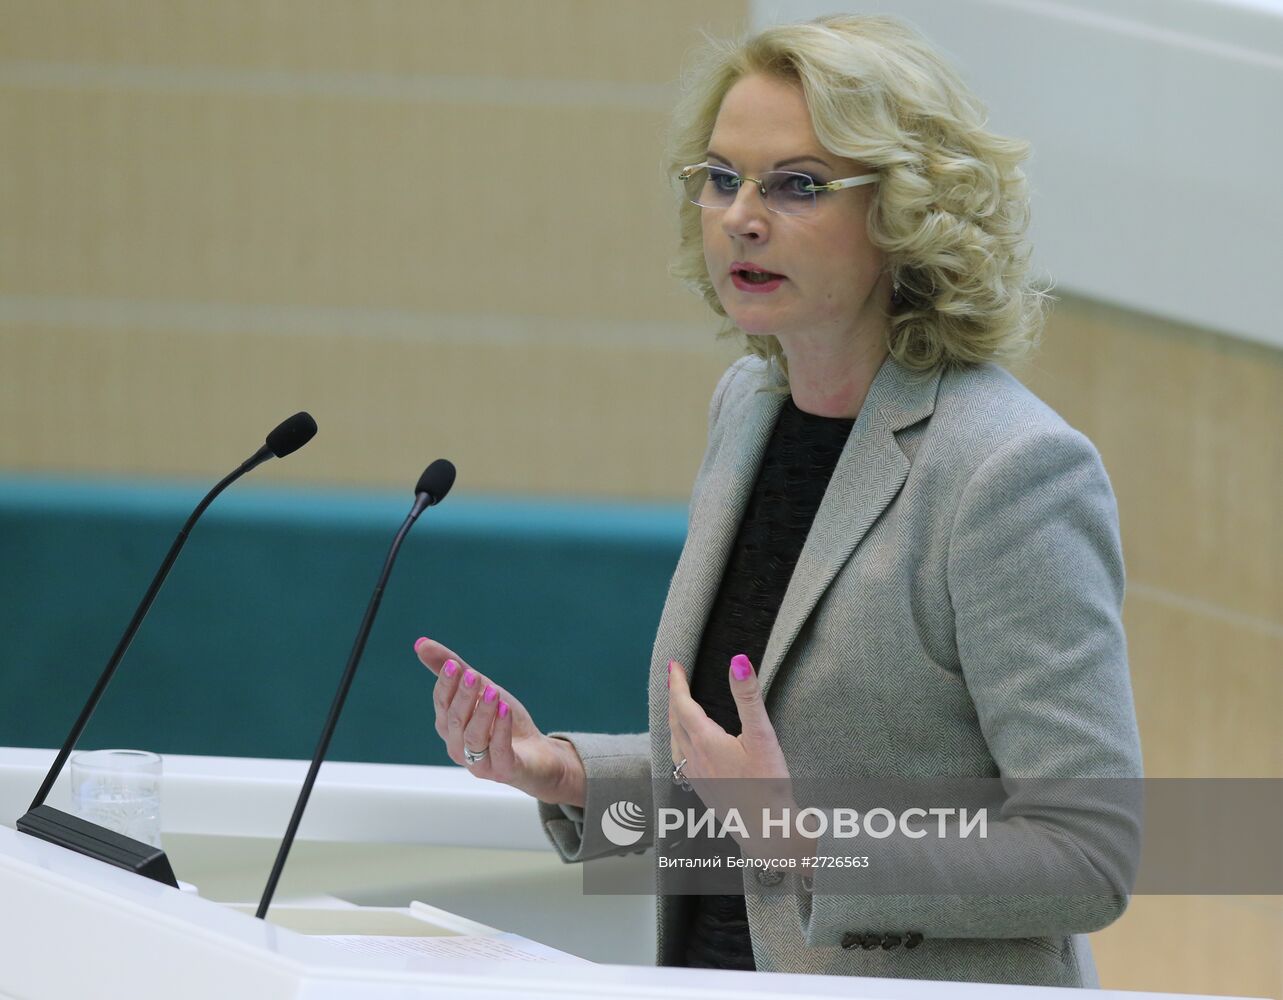 Парламентские слушания в Совете Федерации, посвященные проекту федерального бюджета на 2016 год